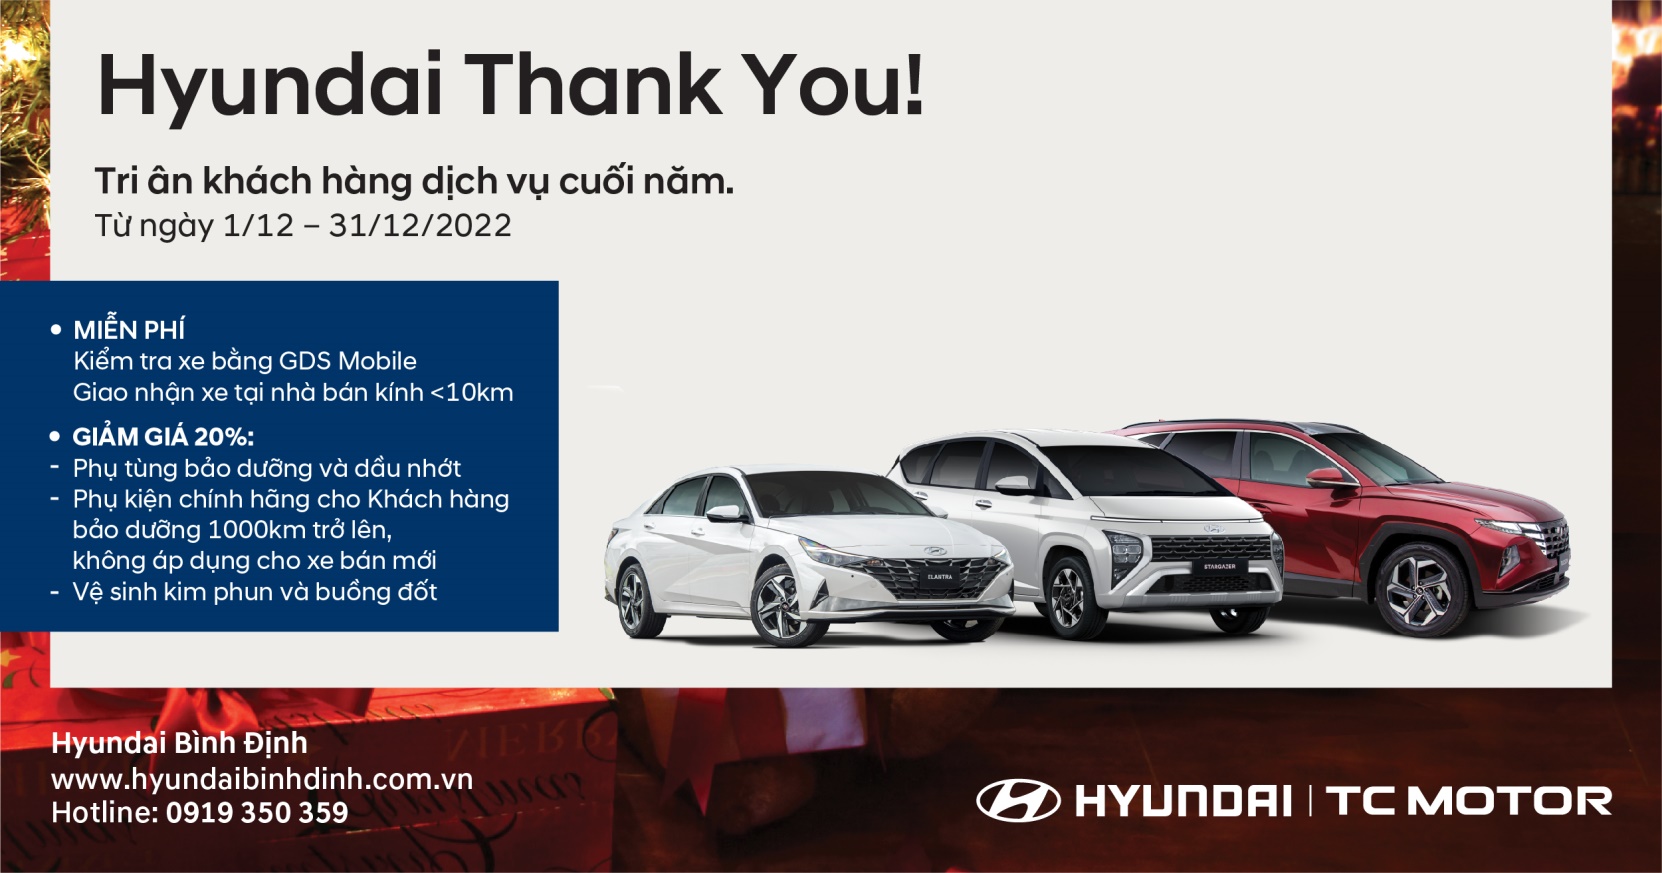 Hyundai Bình Định: Khuyến mãi dịch vụ cuối năm 2022 - 1